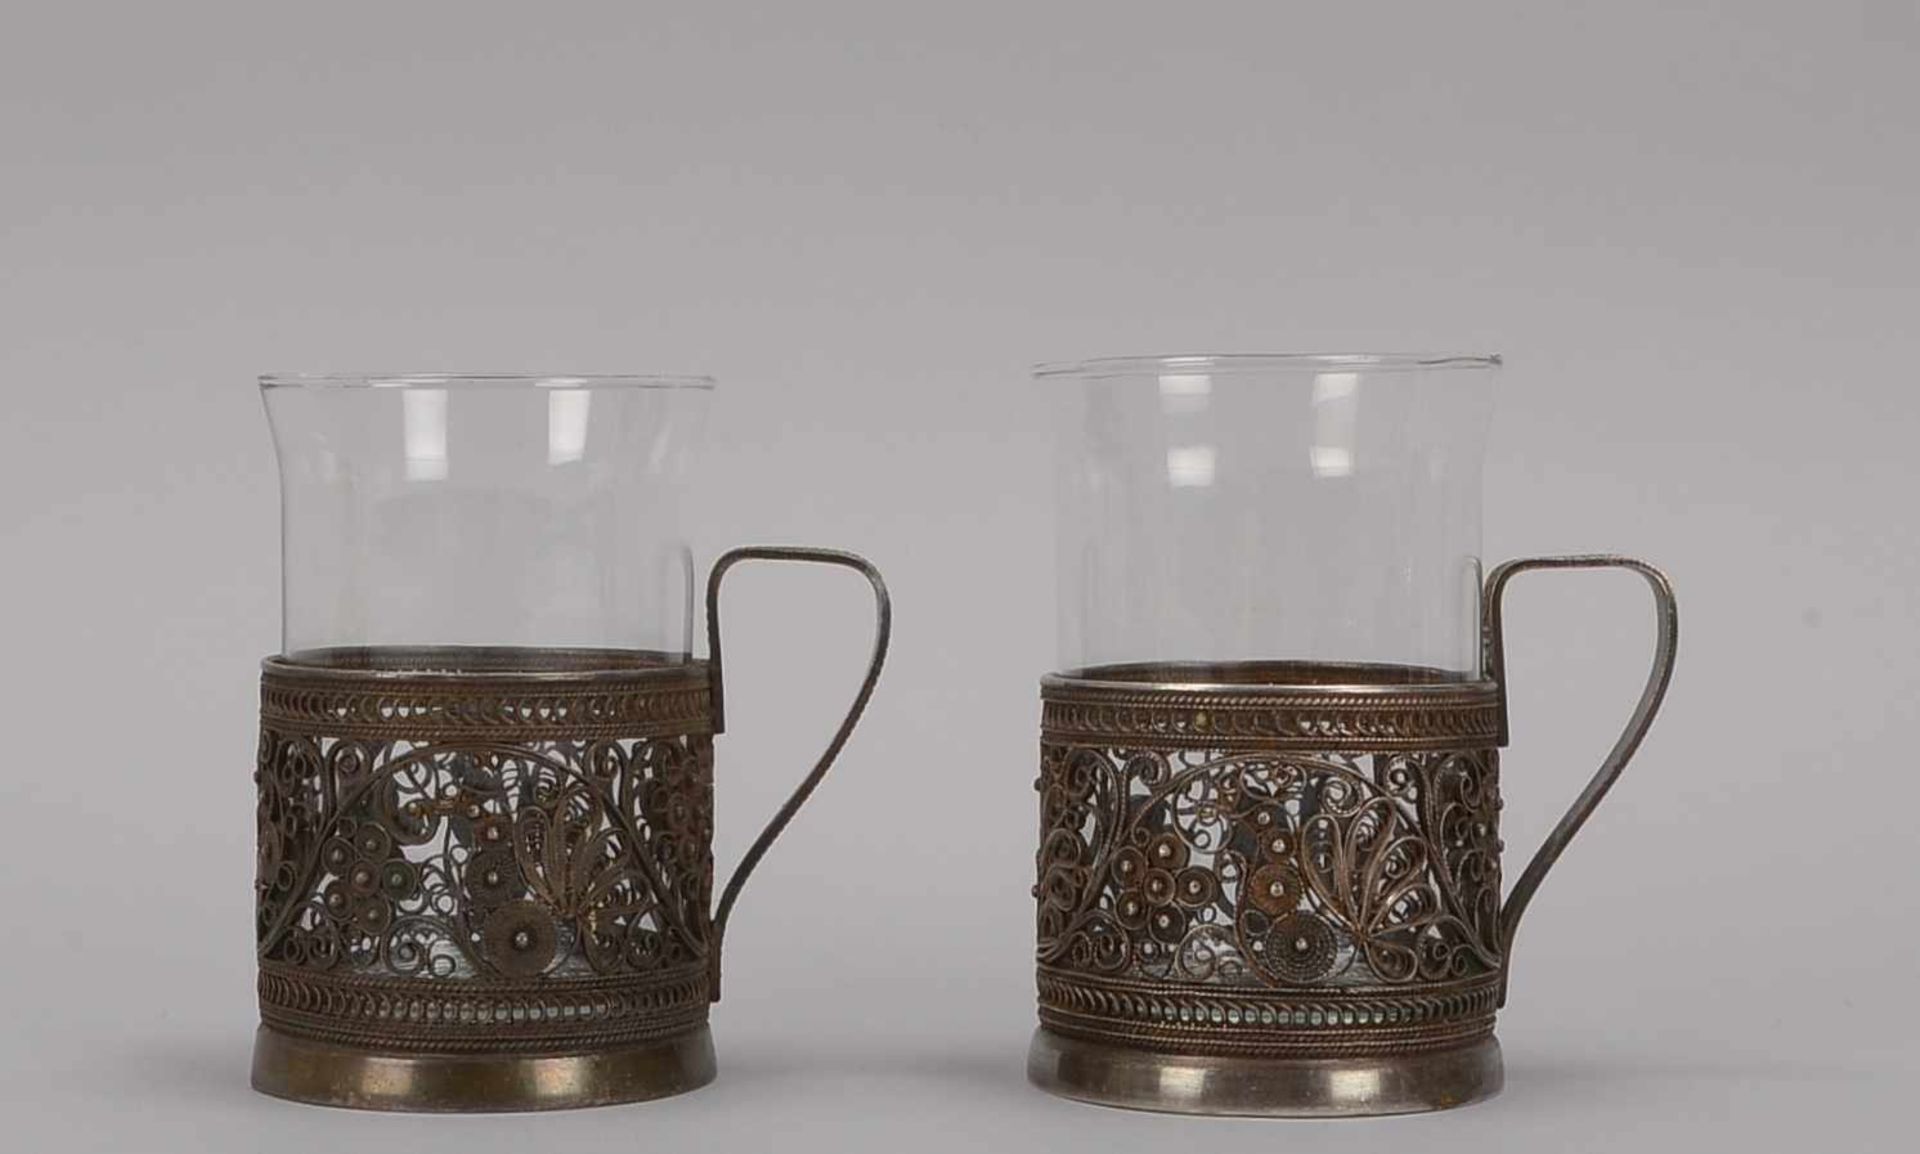 2 Teegläser, Ostfriesland(?), antik, mit Silber-Glashalter/in Filigranarbeit; Höhe 11 cm (Gläser